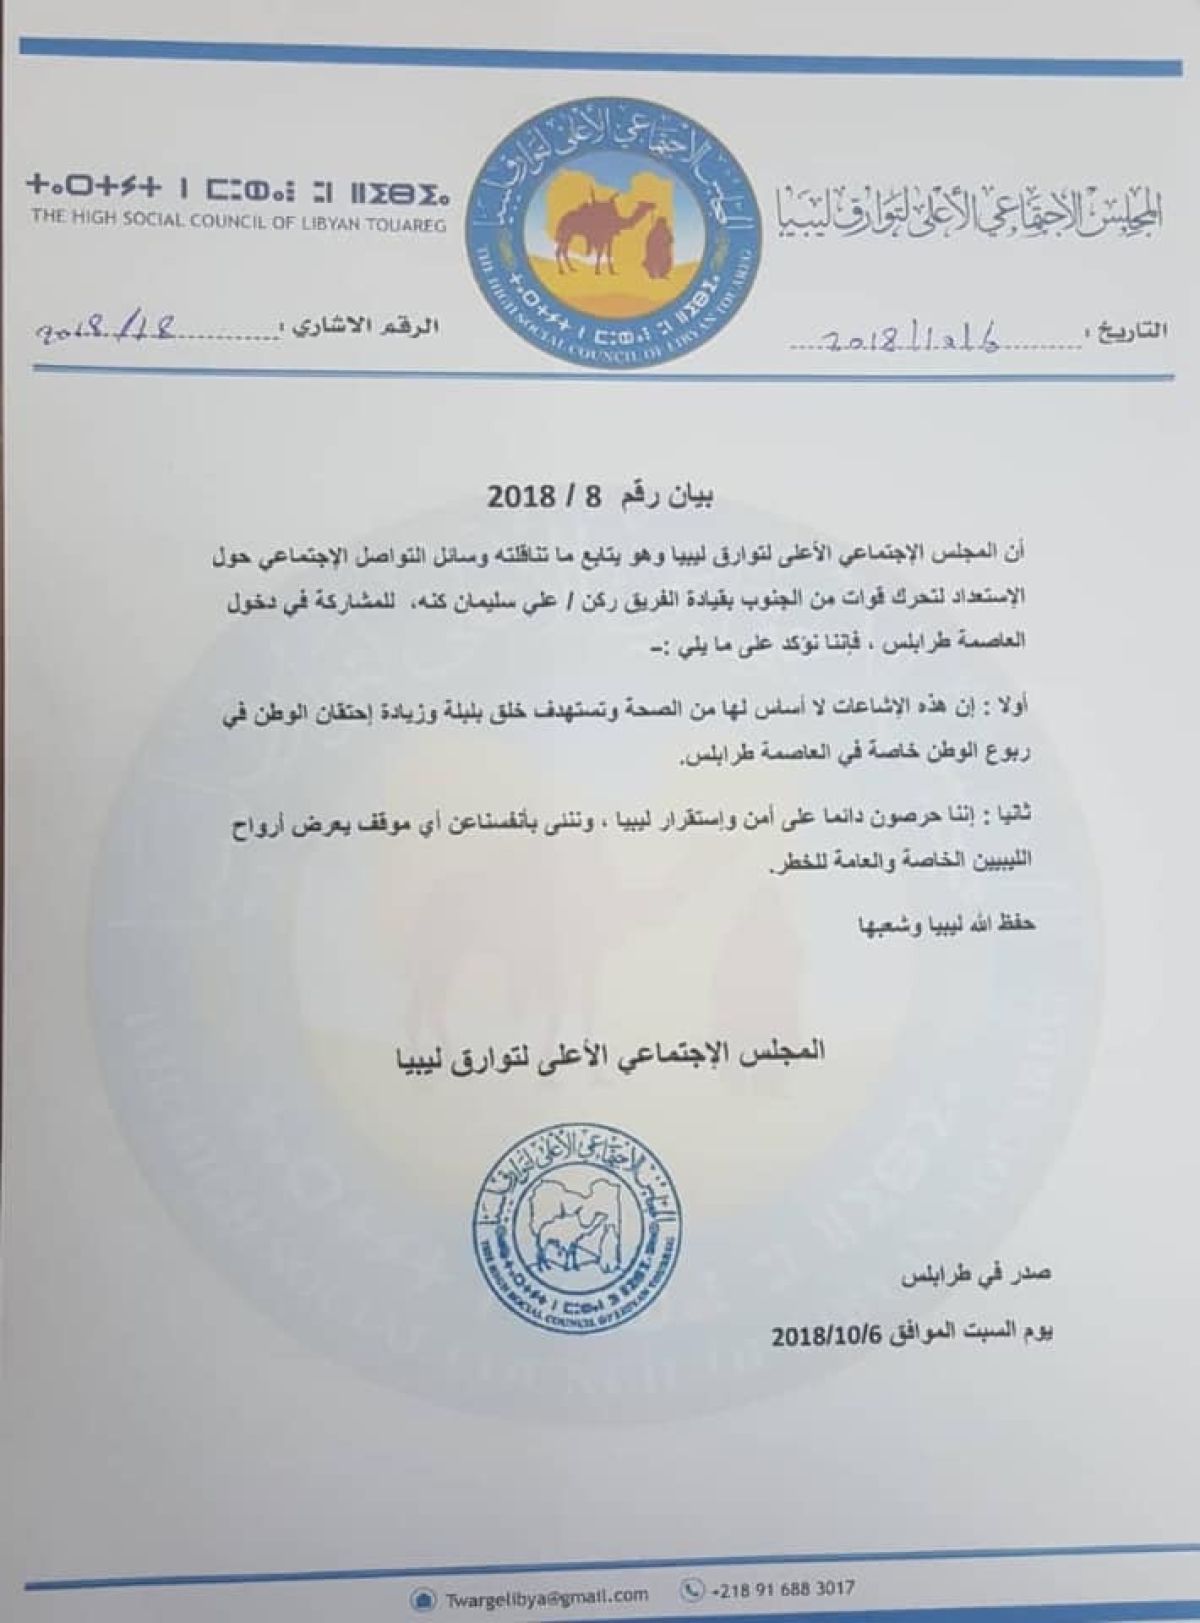 المجلس الأعلى للطوارق ينفي وجود قوة من الجنوب تنوي إقتحام طرابلس